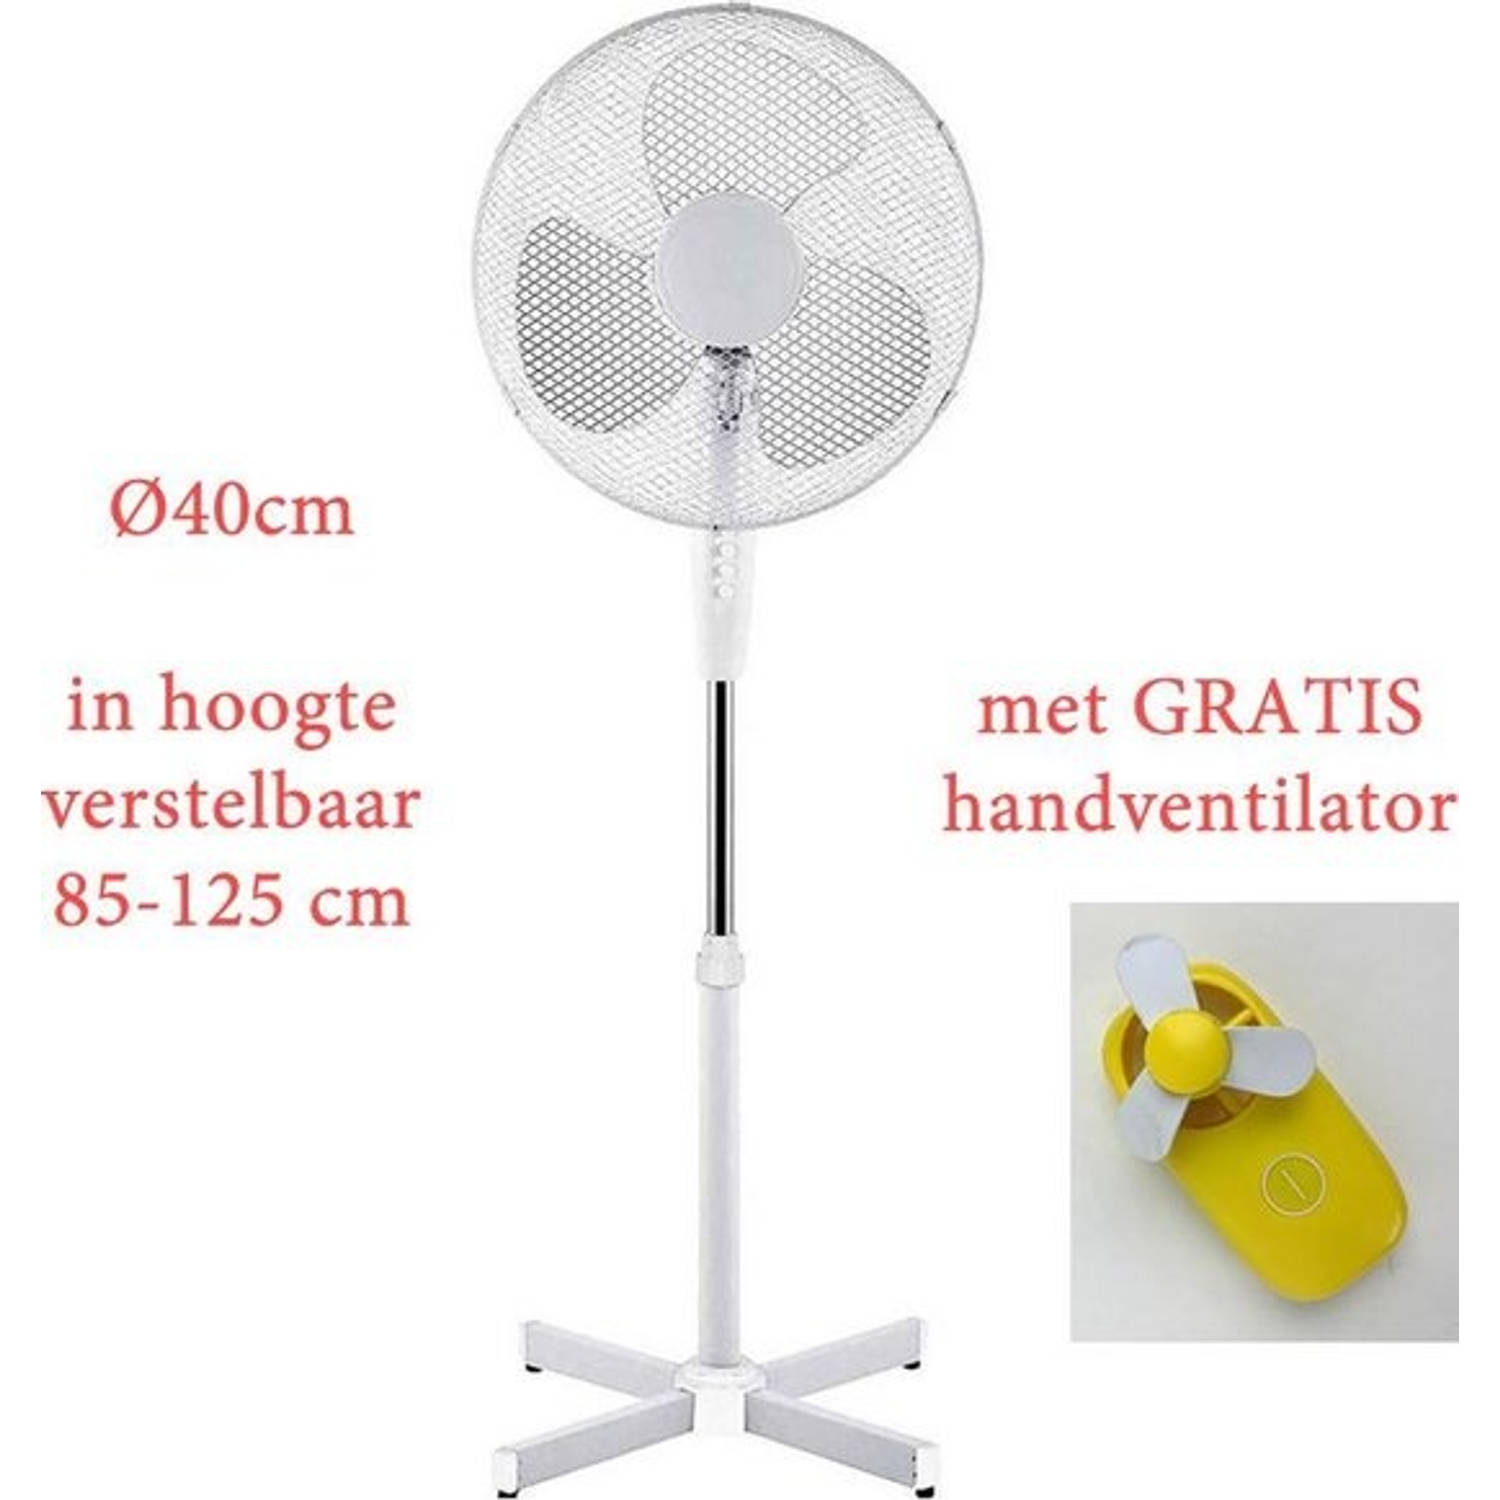 Astro¬æ Ventilator Staand Fan Ventilatoren Luchtkoeler Wit Vò 40cm